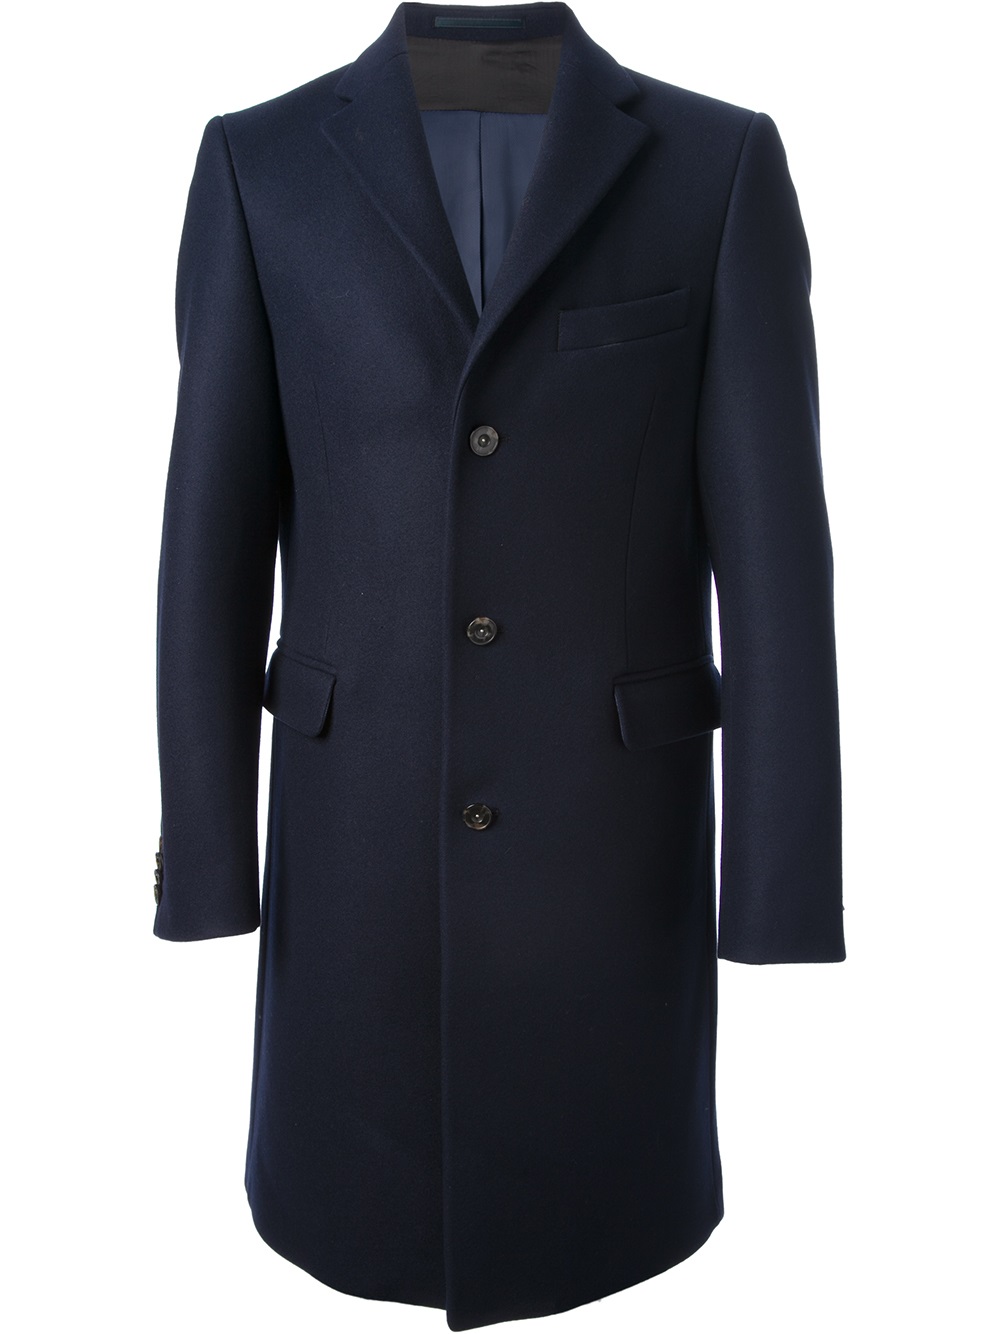 Lyst - Acne Studios Garret Overcoat in Blue for Men